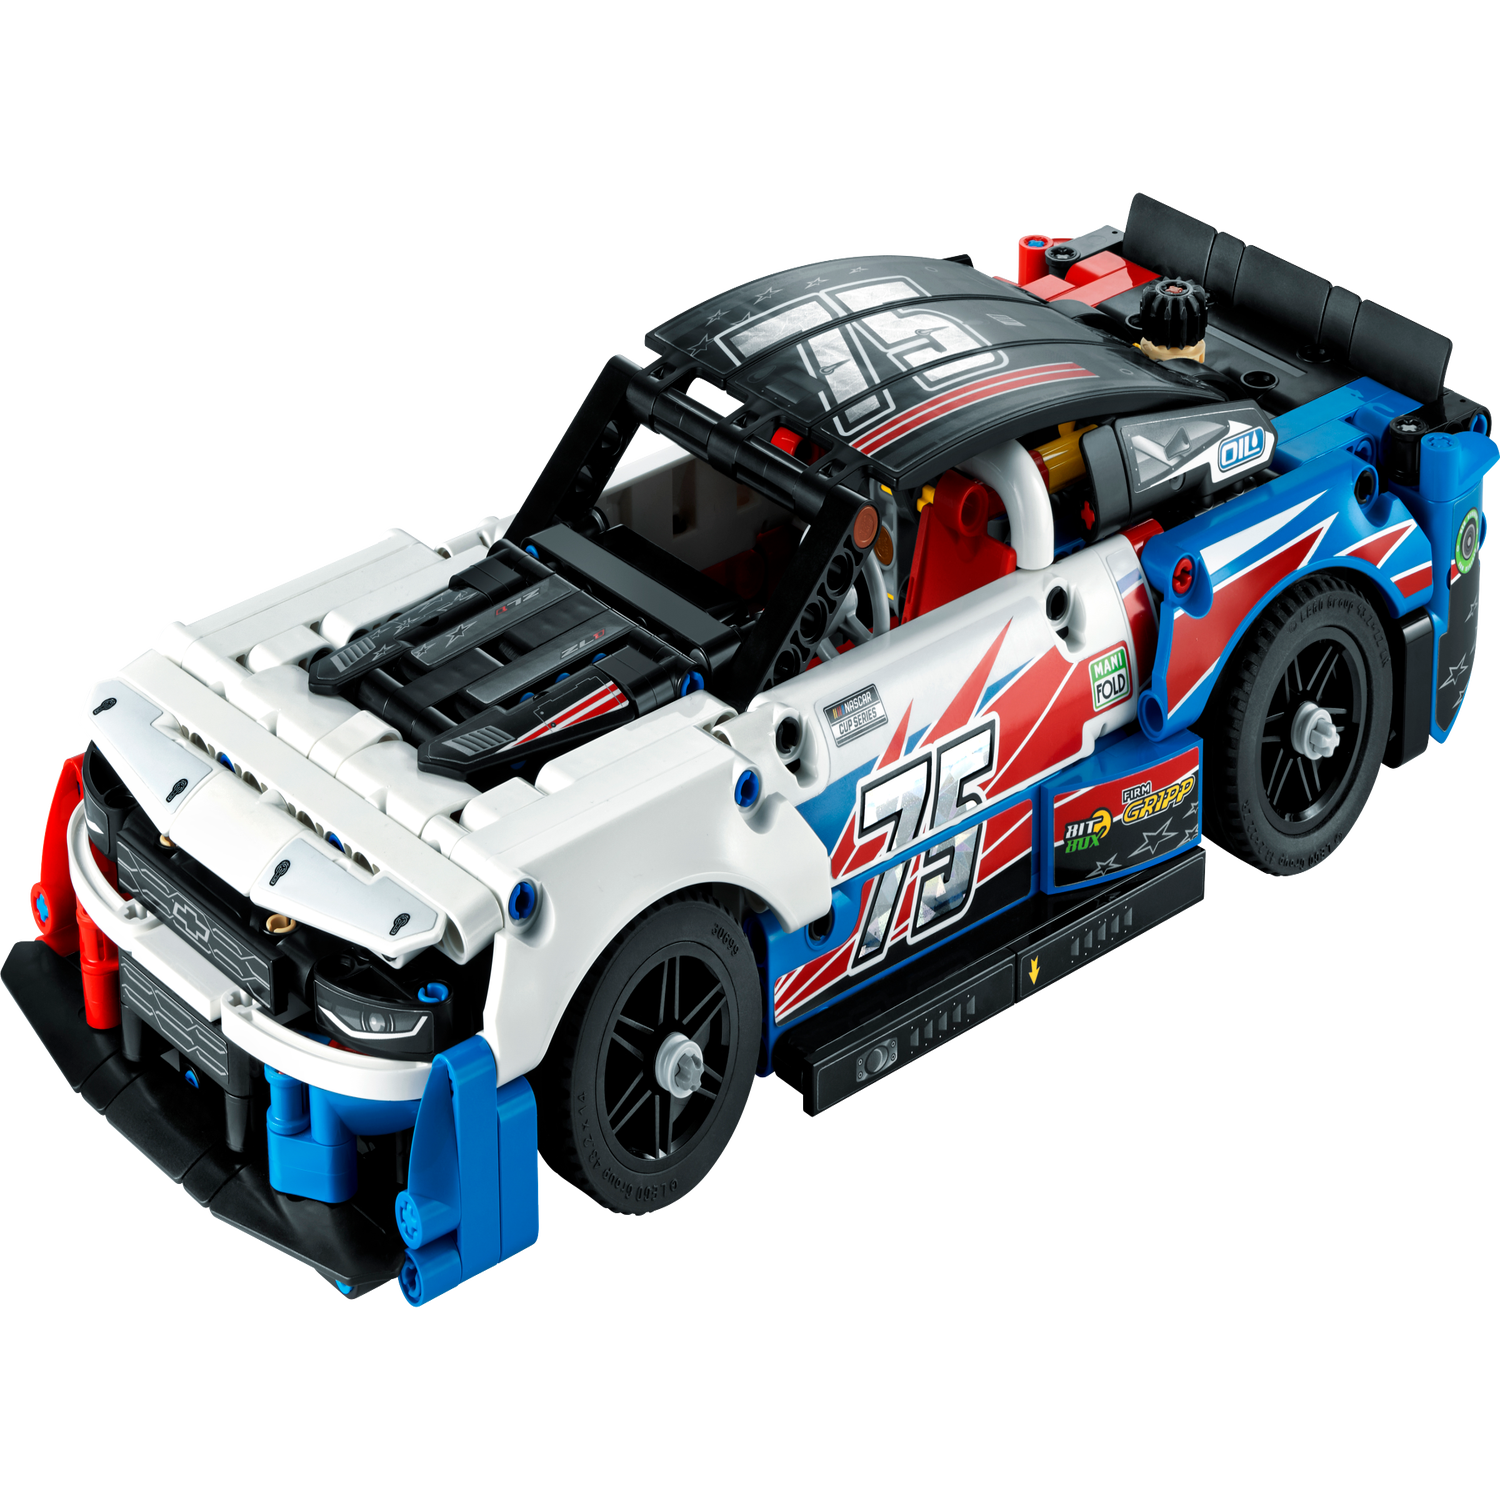 LEGO 42153 Technic Chevrolet Camaro ZL1 NASCAR Next Gen, Kit de Maquette de  Voiture, Collection, Jouet de Véhicule de Course, Construction Automobile  de Sport : : Jeux et Jouets